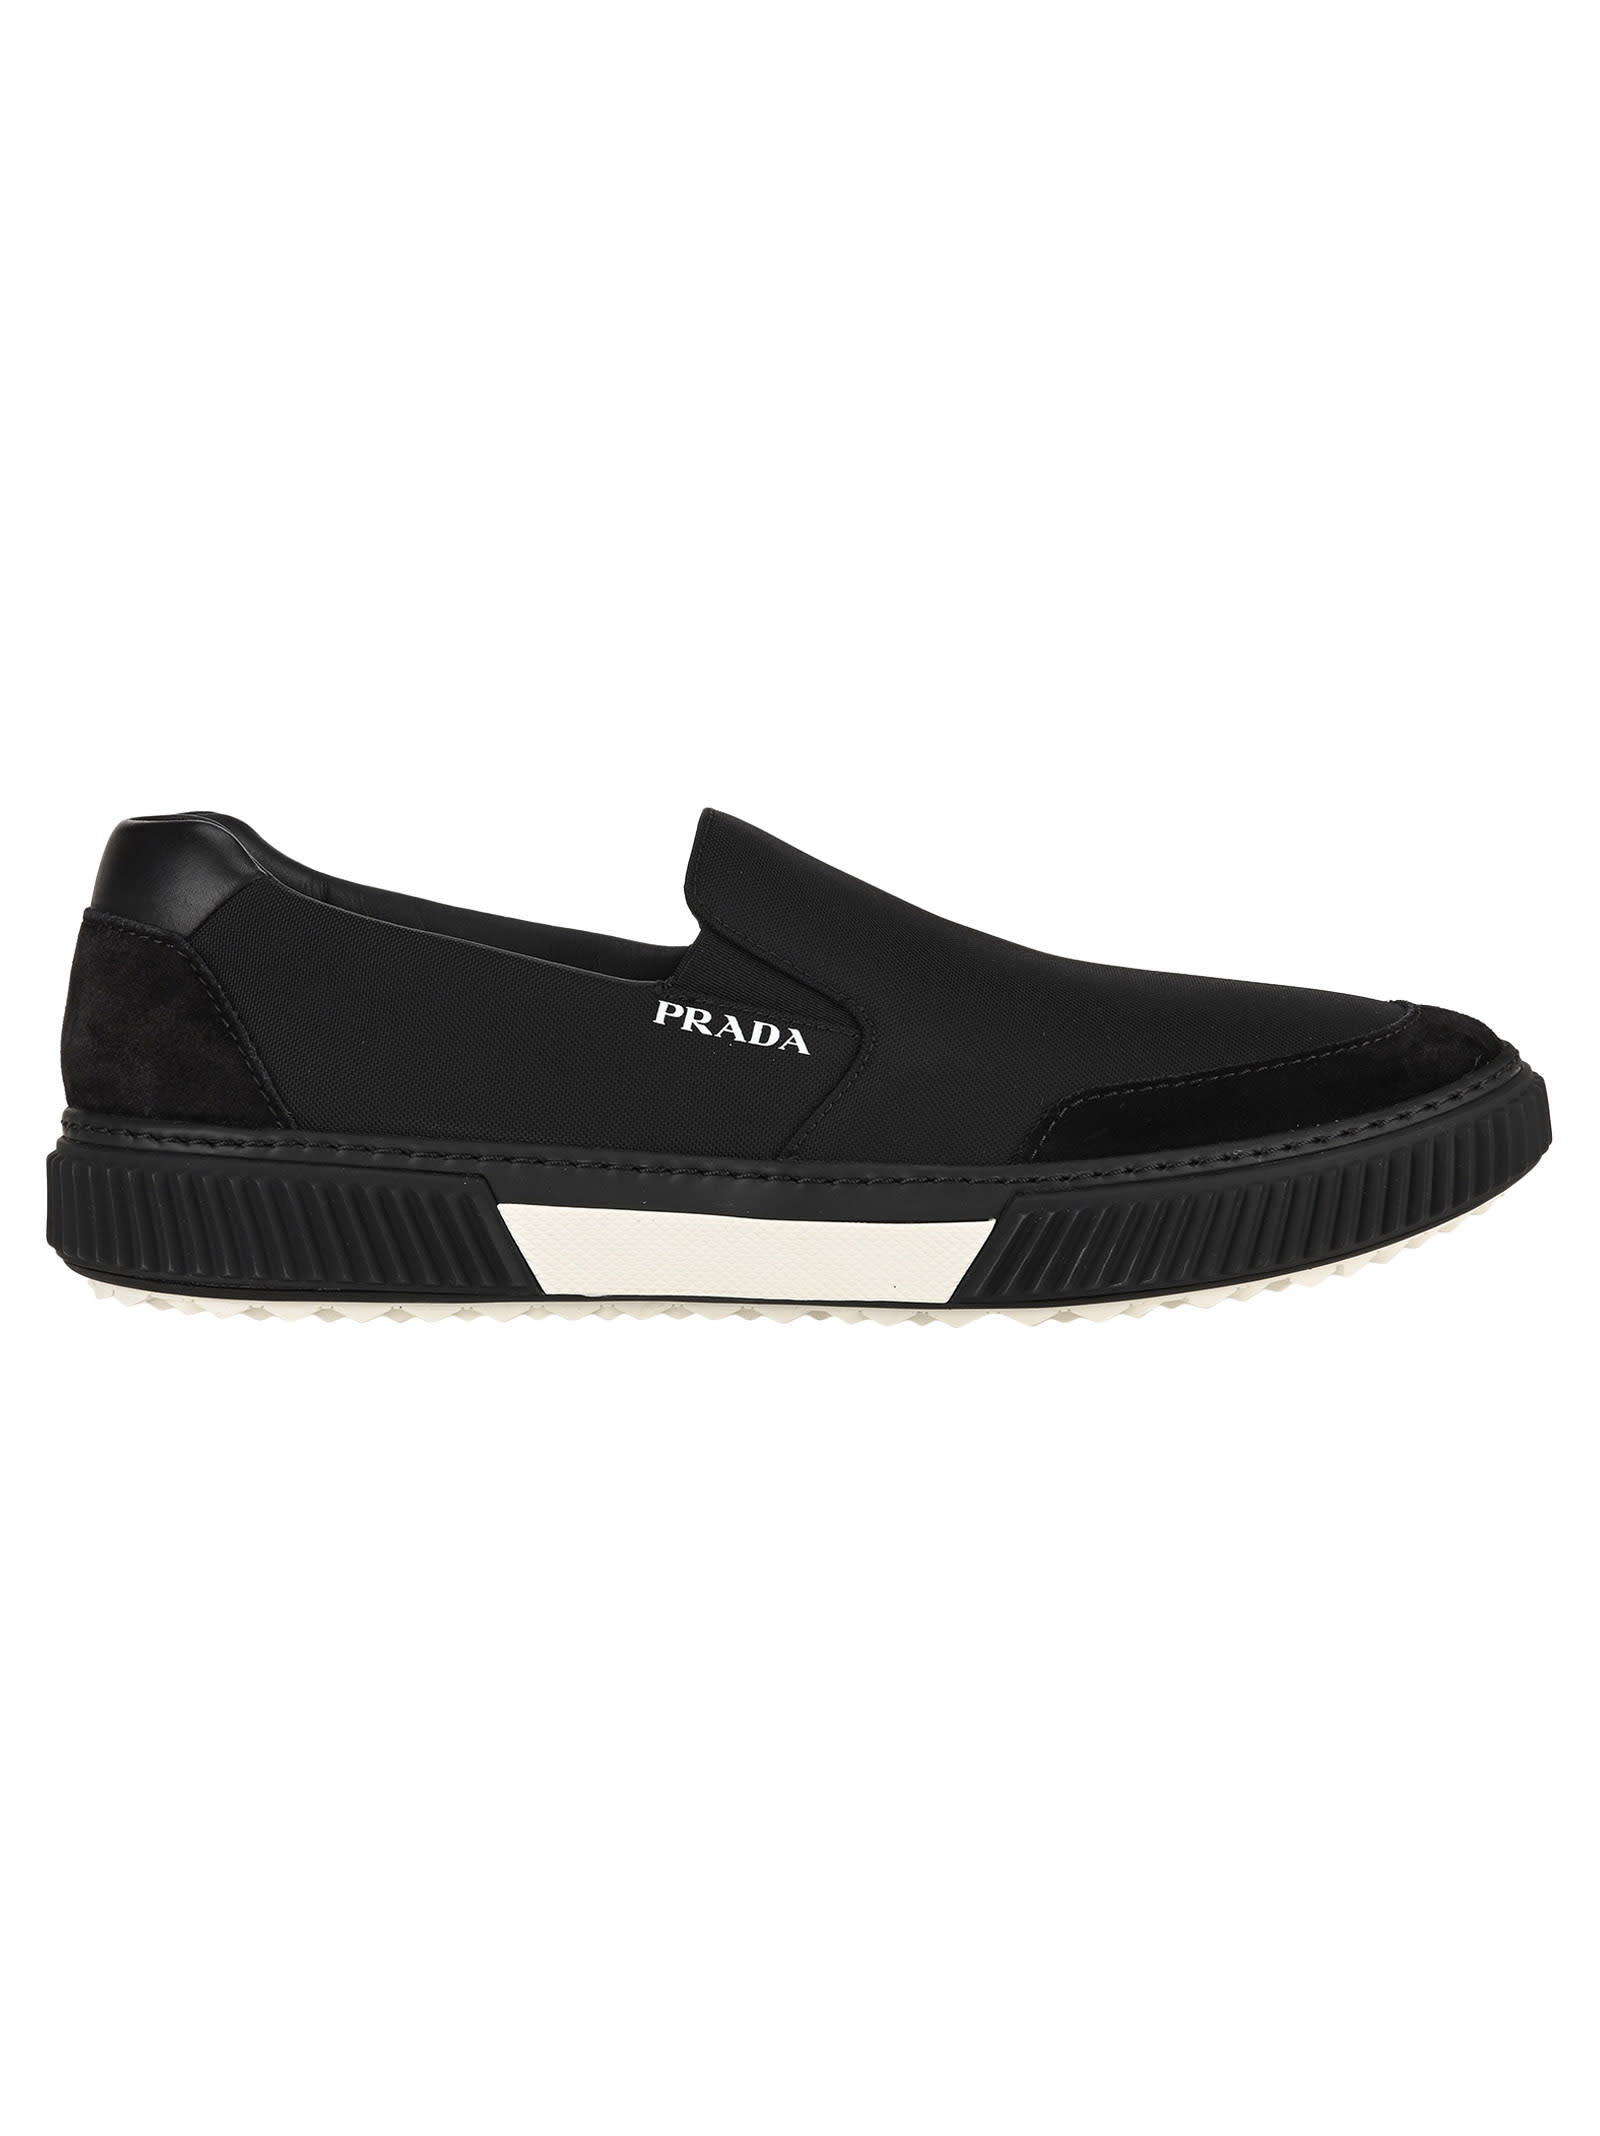 Prada Prada Slip-on Sneakers - BLACK 